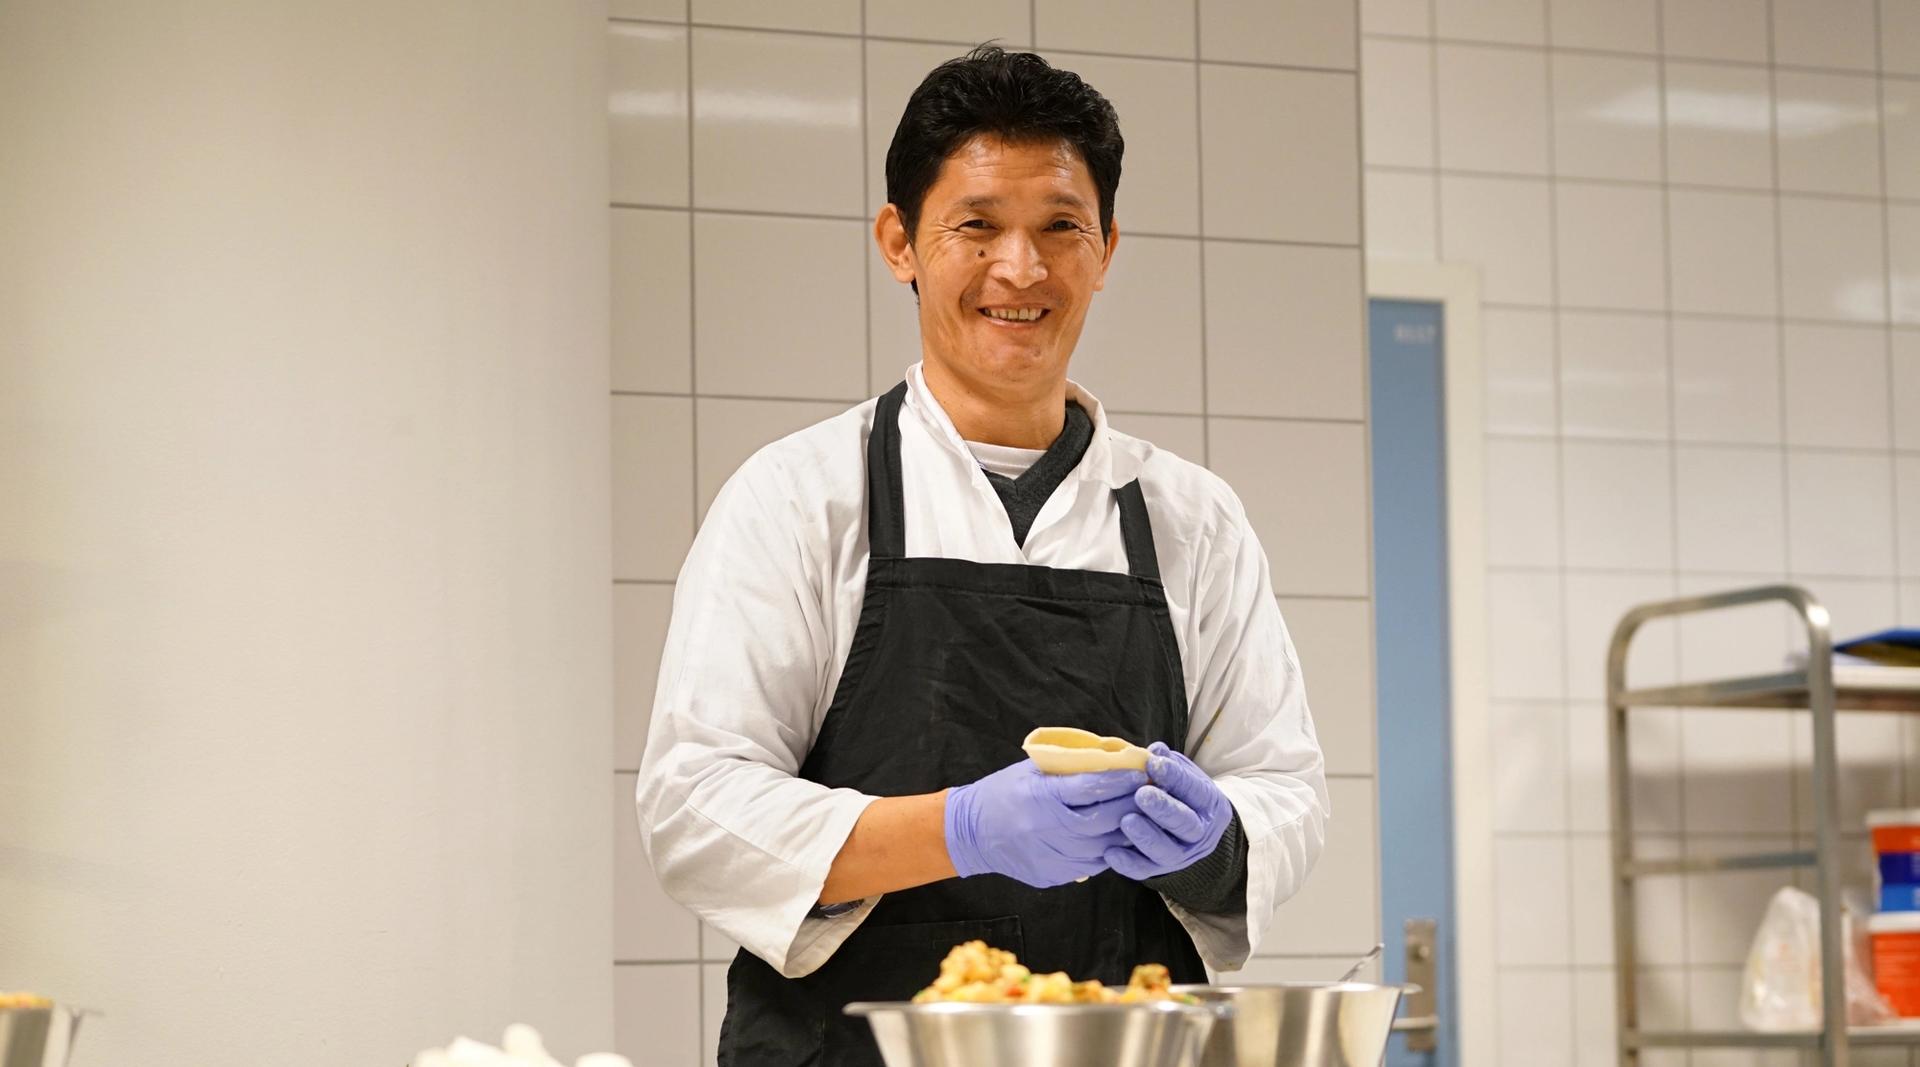 Mann i kokkeklær smiler til kamera mens han lager mat